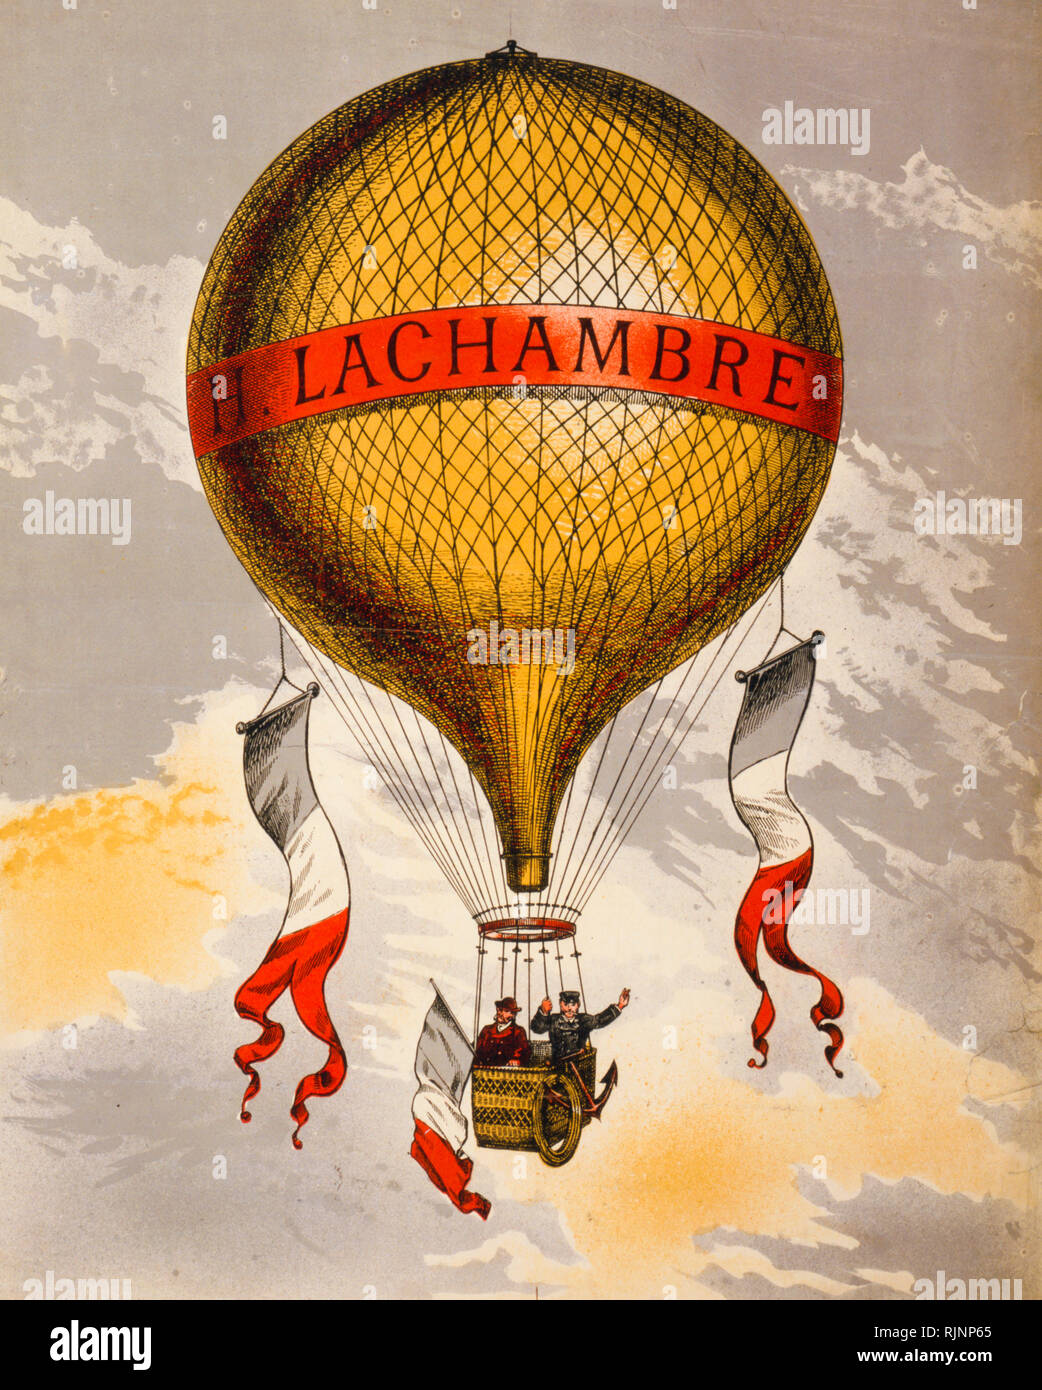 Vintage französische Plakat möglicherweise Werbung ein Ballon von Henri Lachambre von Vaugirard, Paris, Frankreich, Europa hergestellt, zwischen 1880 und 1900 - Drucken Stockfoto